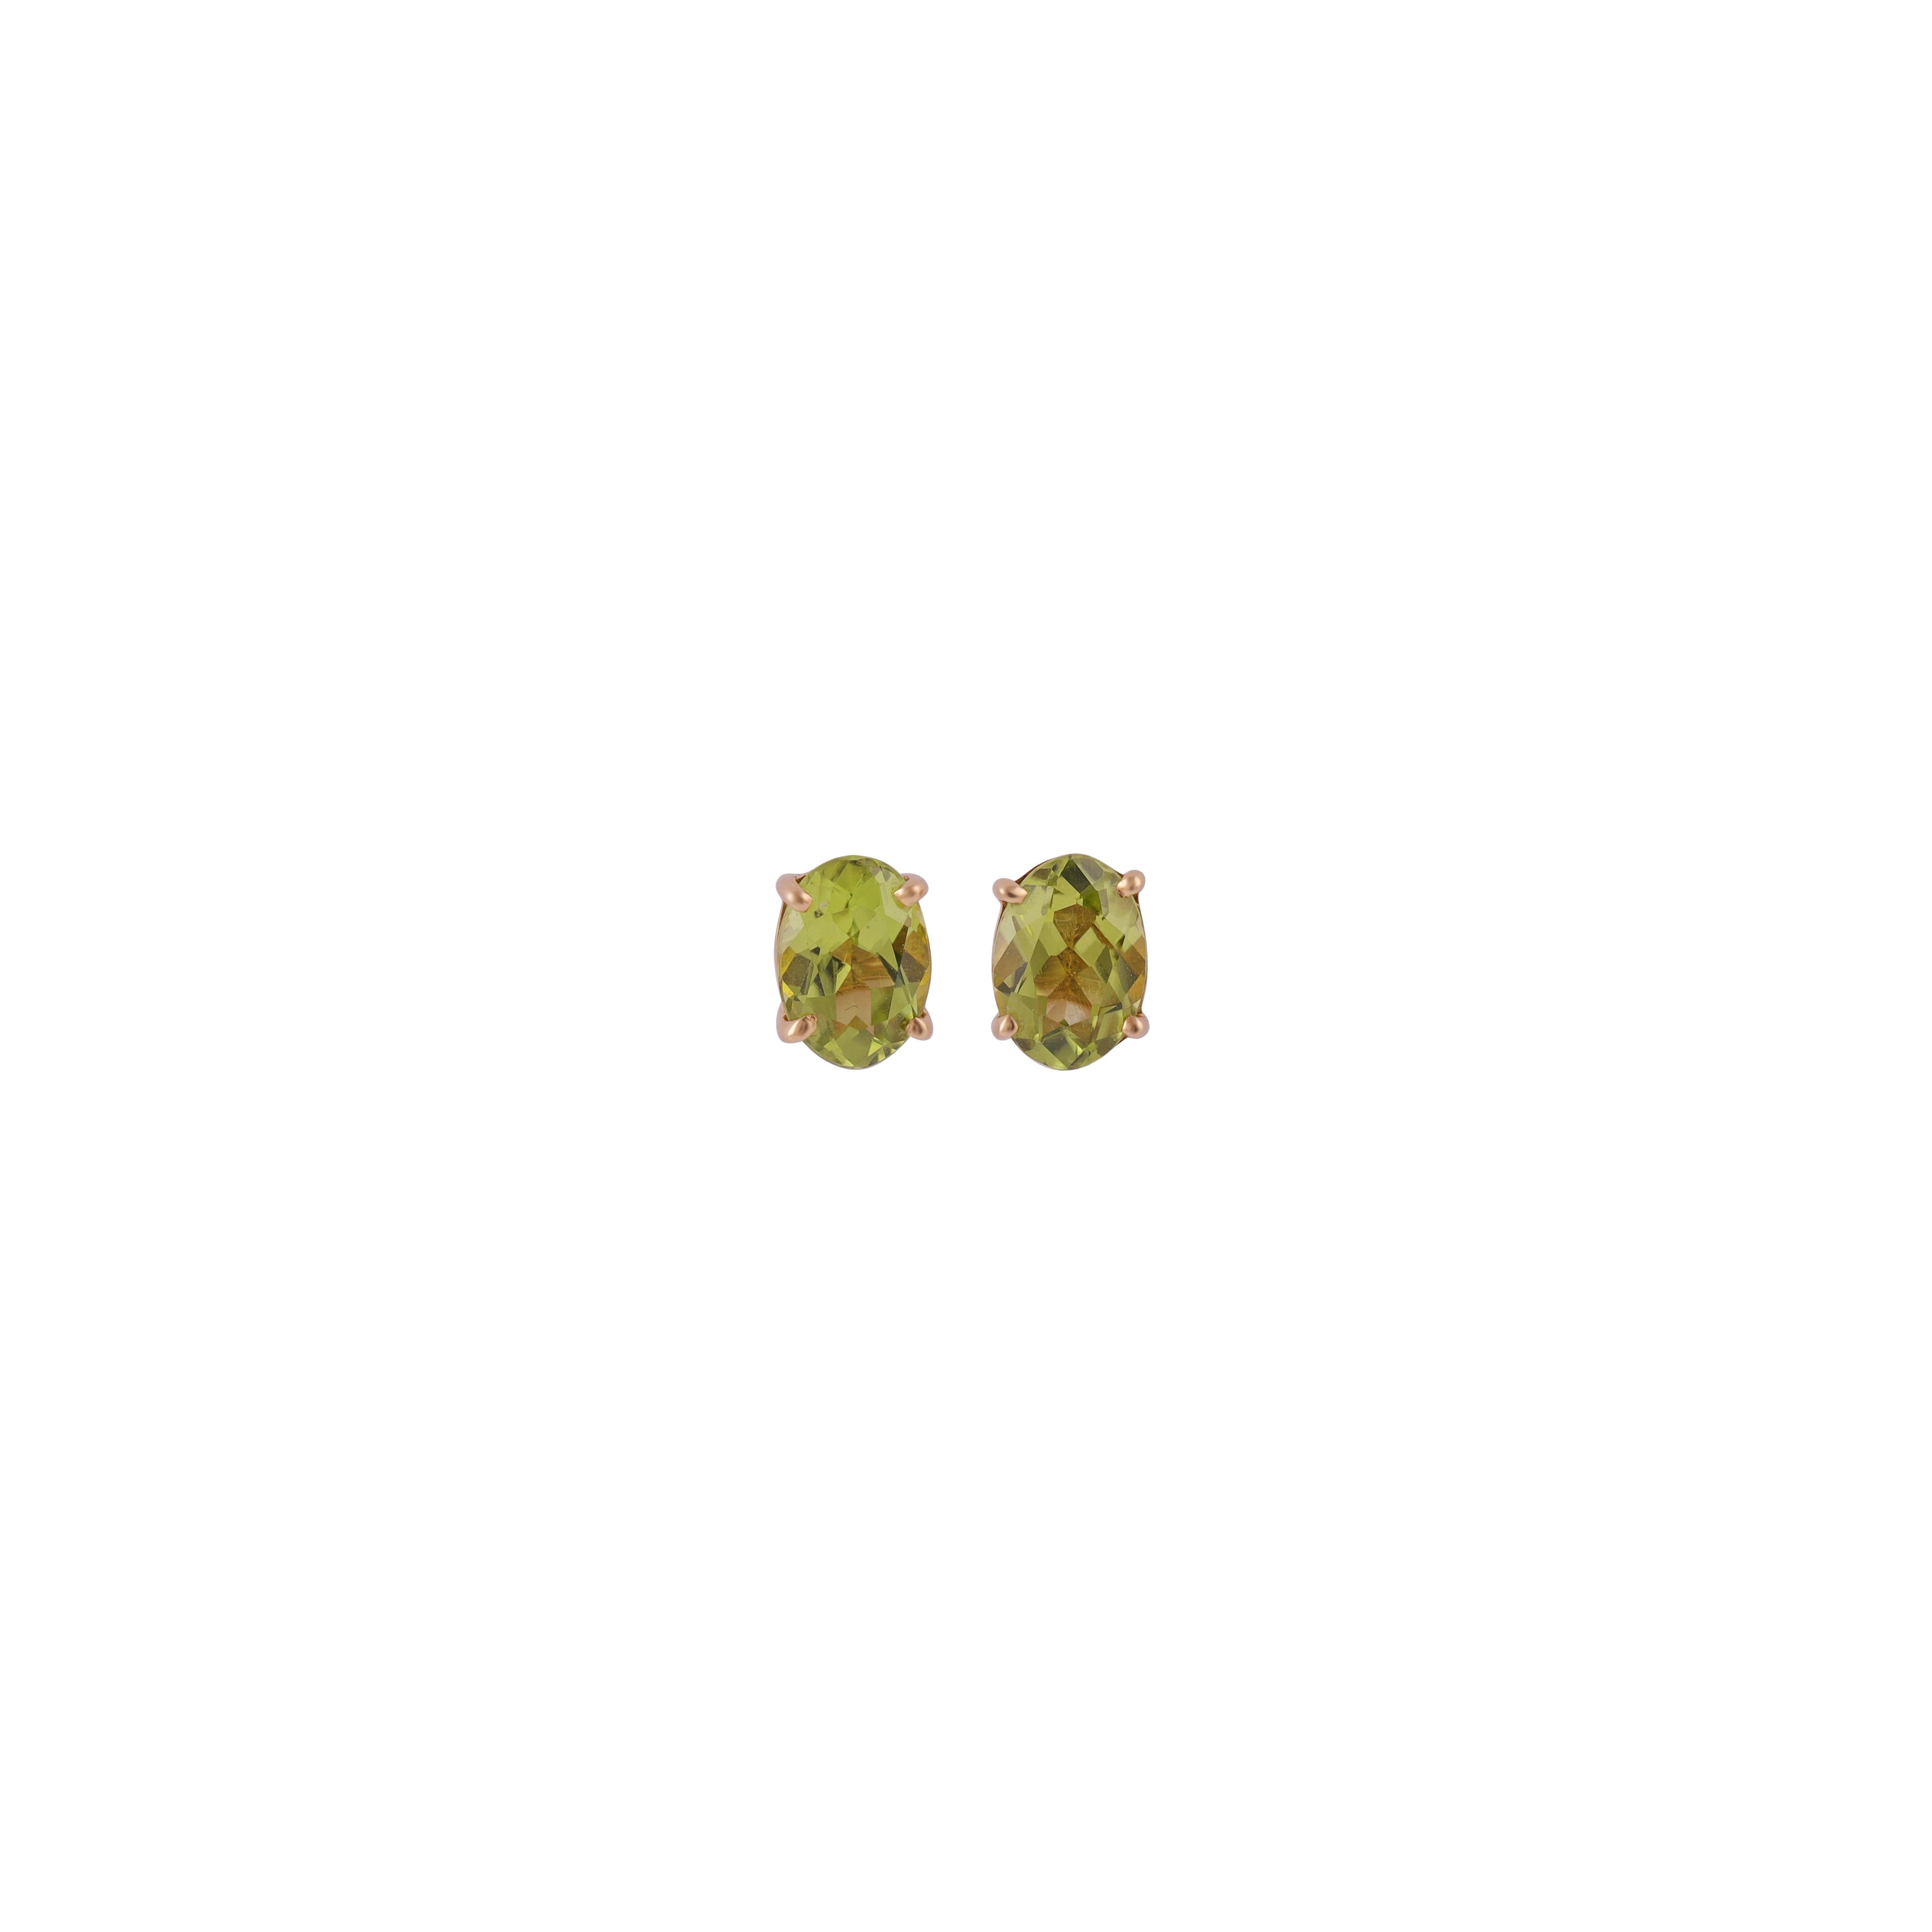 Oval Cut 2.06 Carat Peridot Stud Earrings in 18k Yellow Gold For Sale